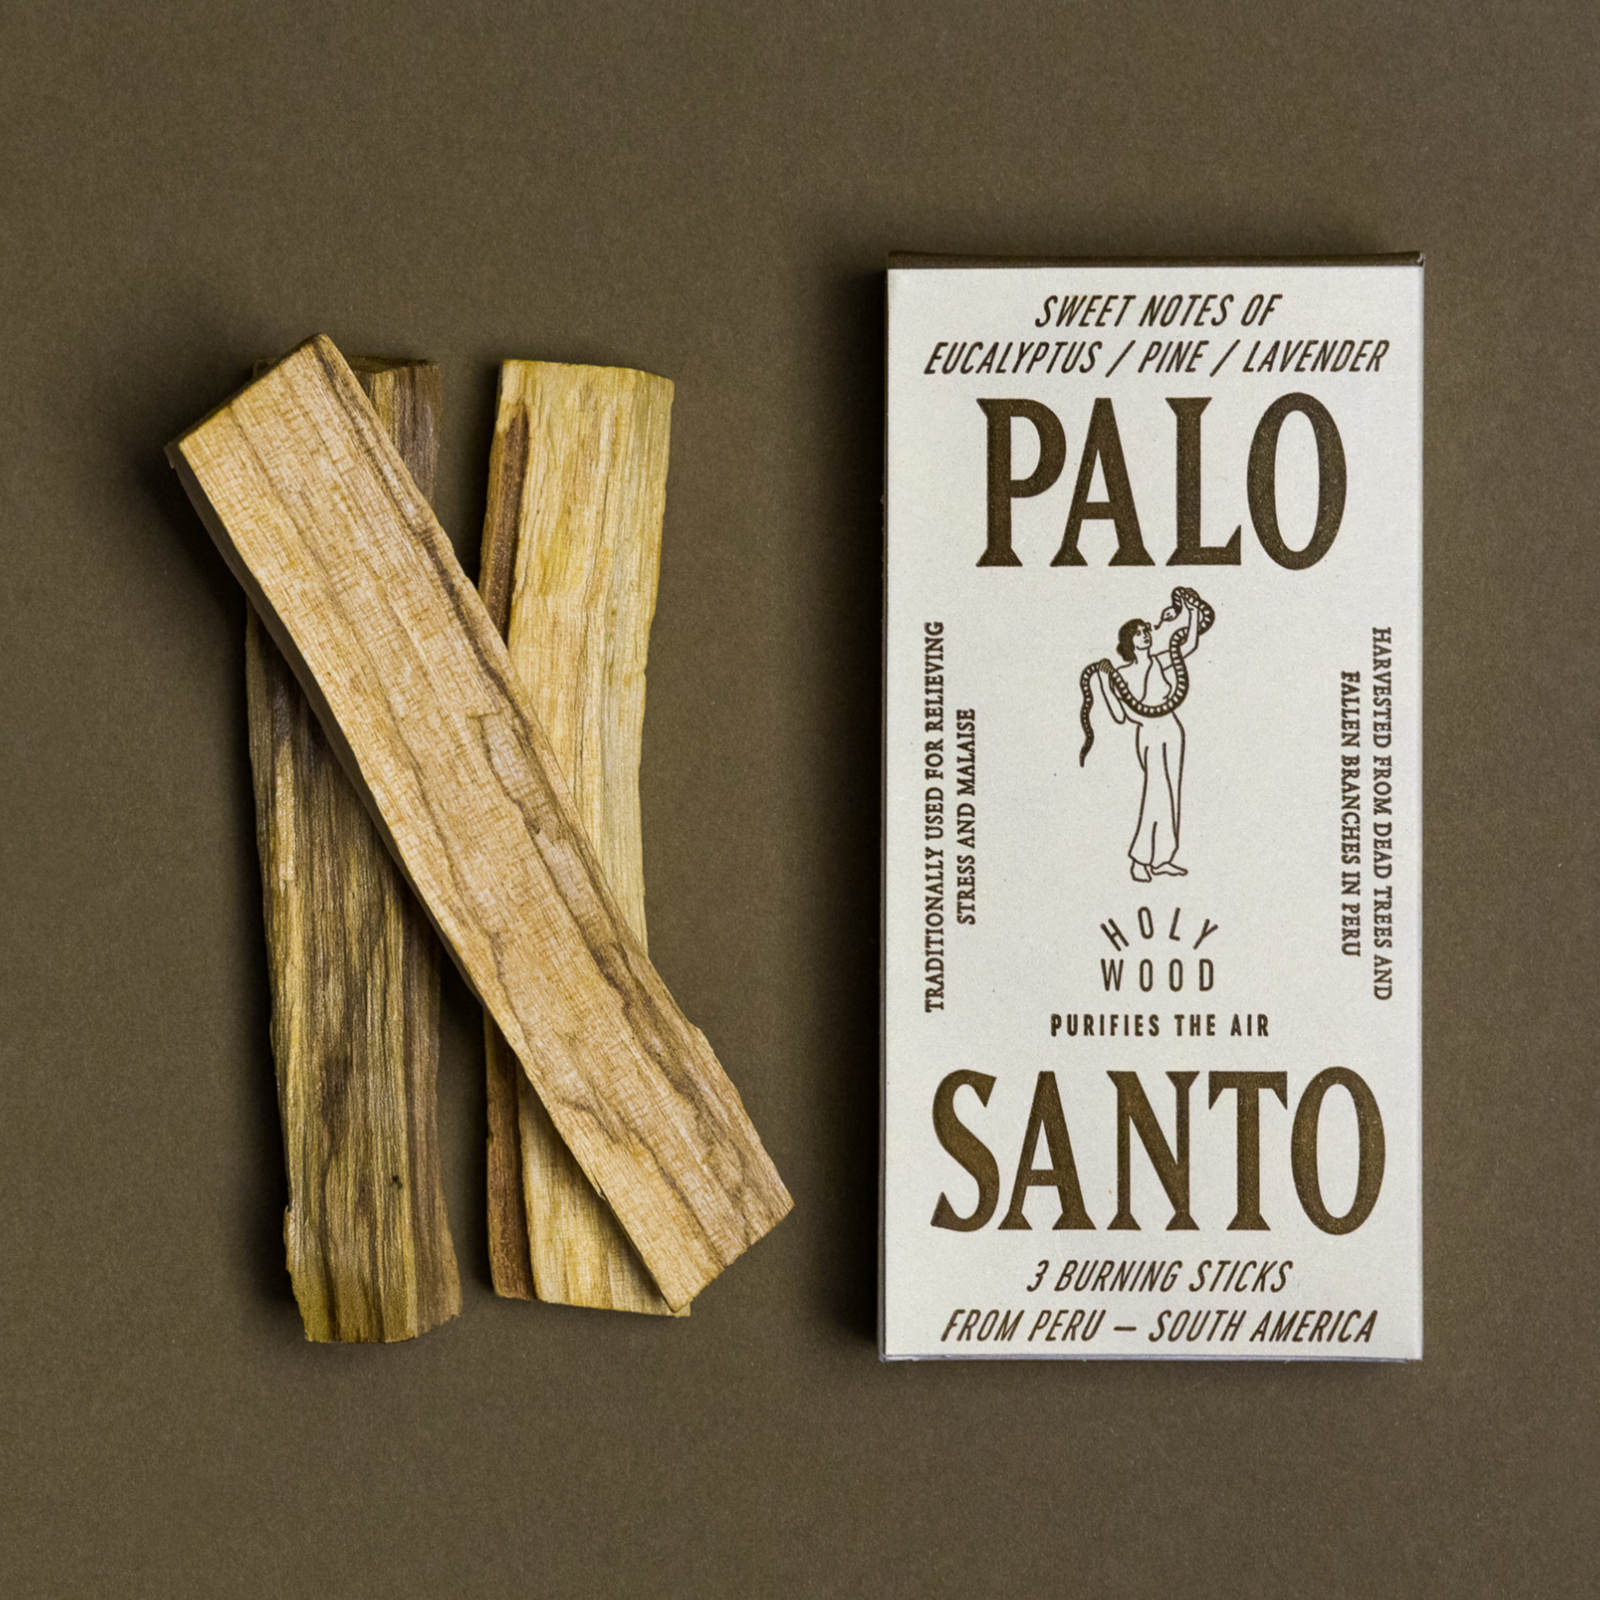 Palo Santo "Holy Wood"